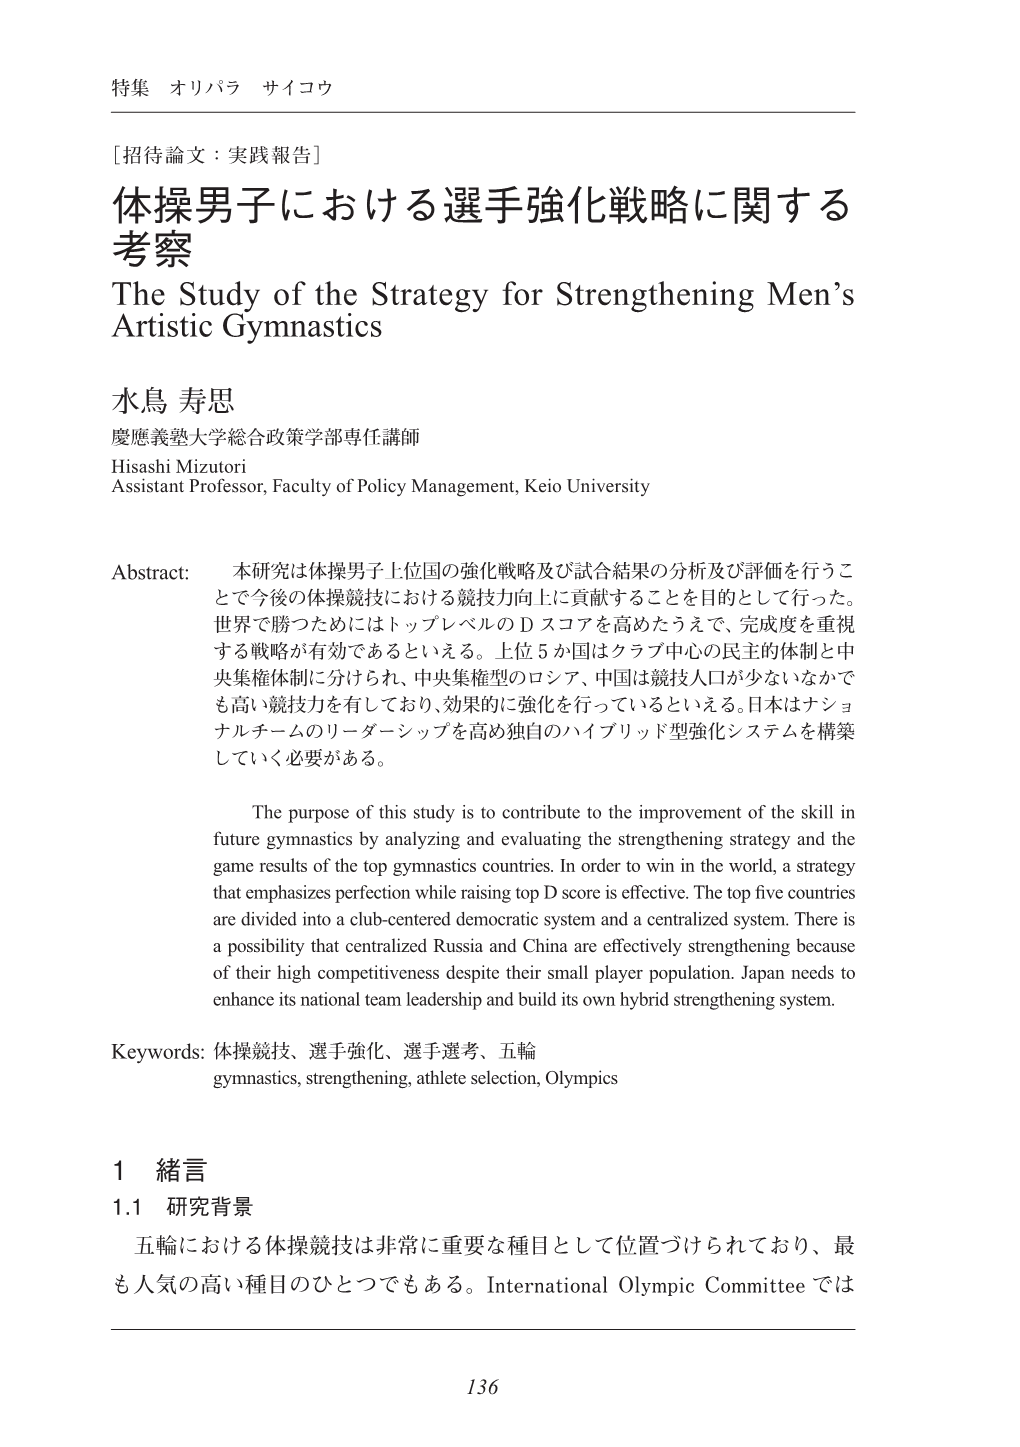 体操男子における選手強化戦略に関する 考察 the Study of the Strategy for Strengthening Men’S Artistic Gymnastics